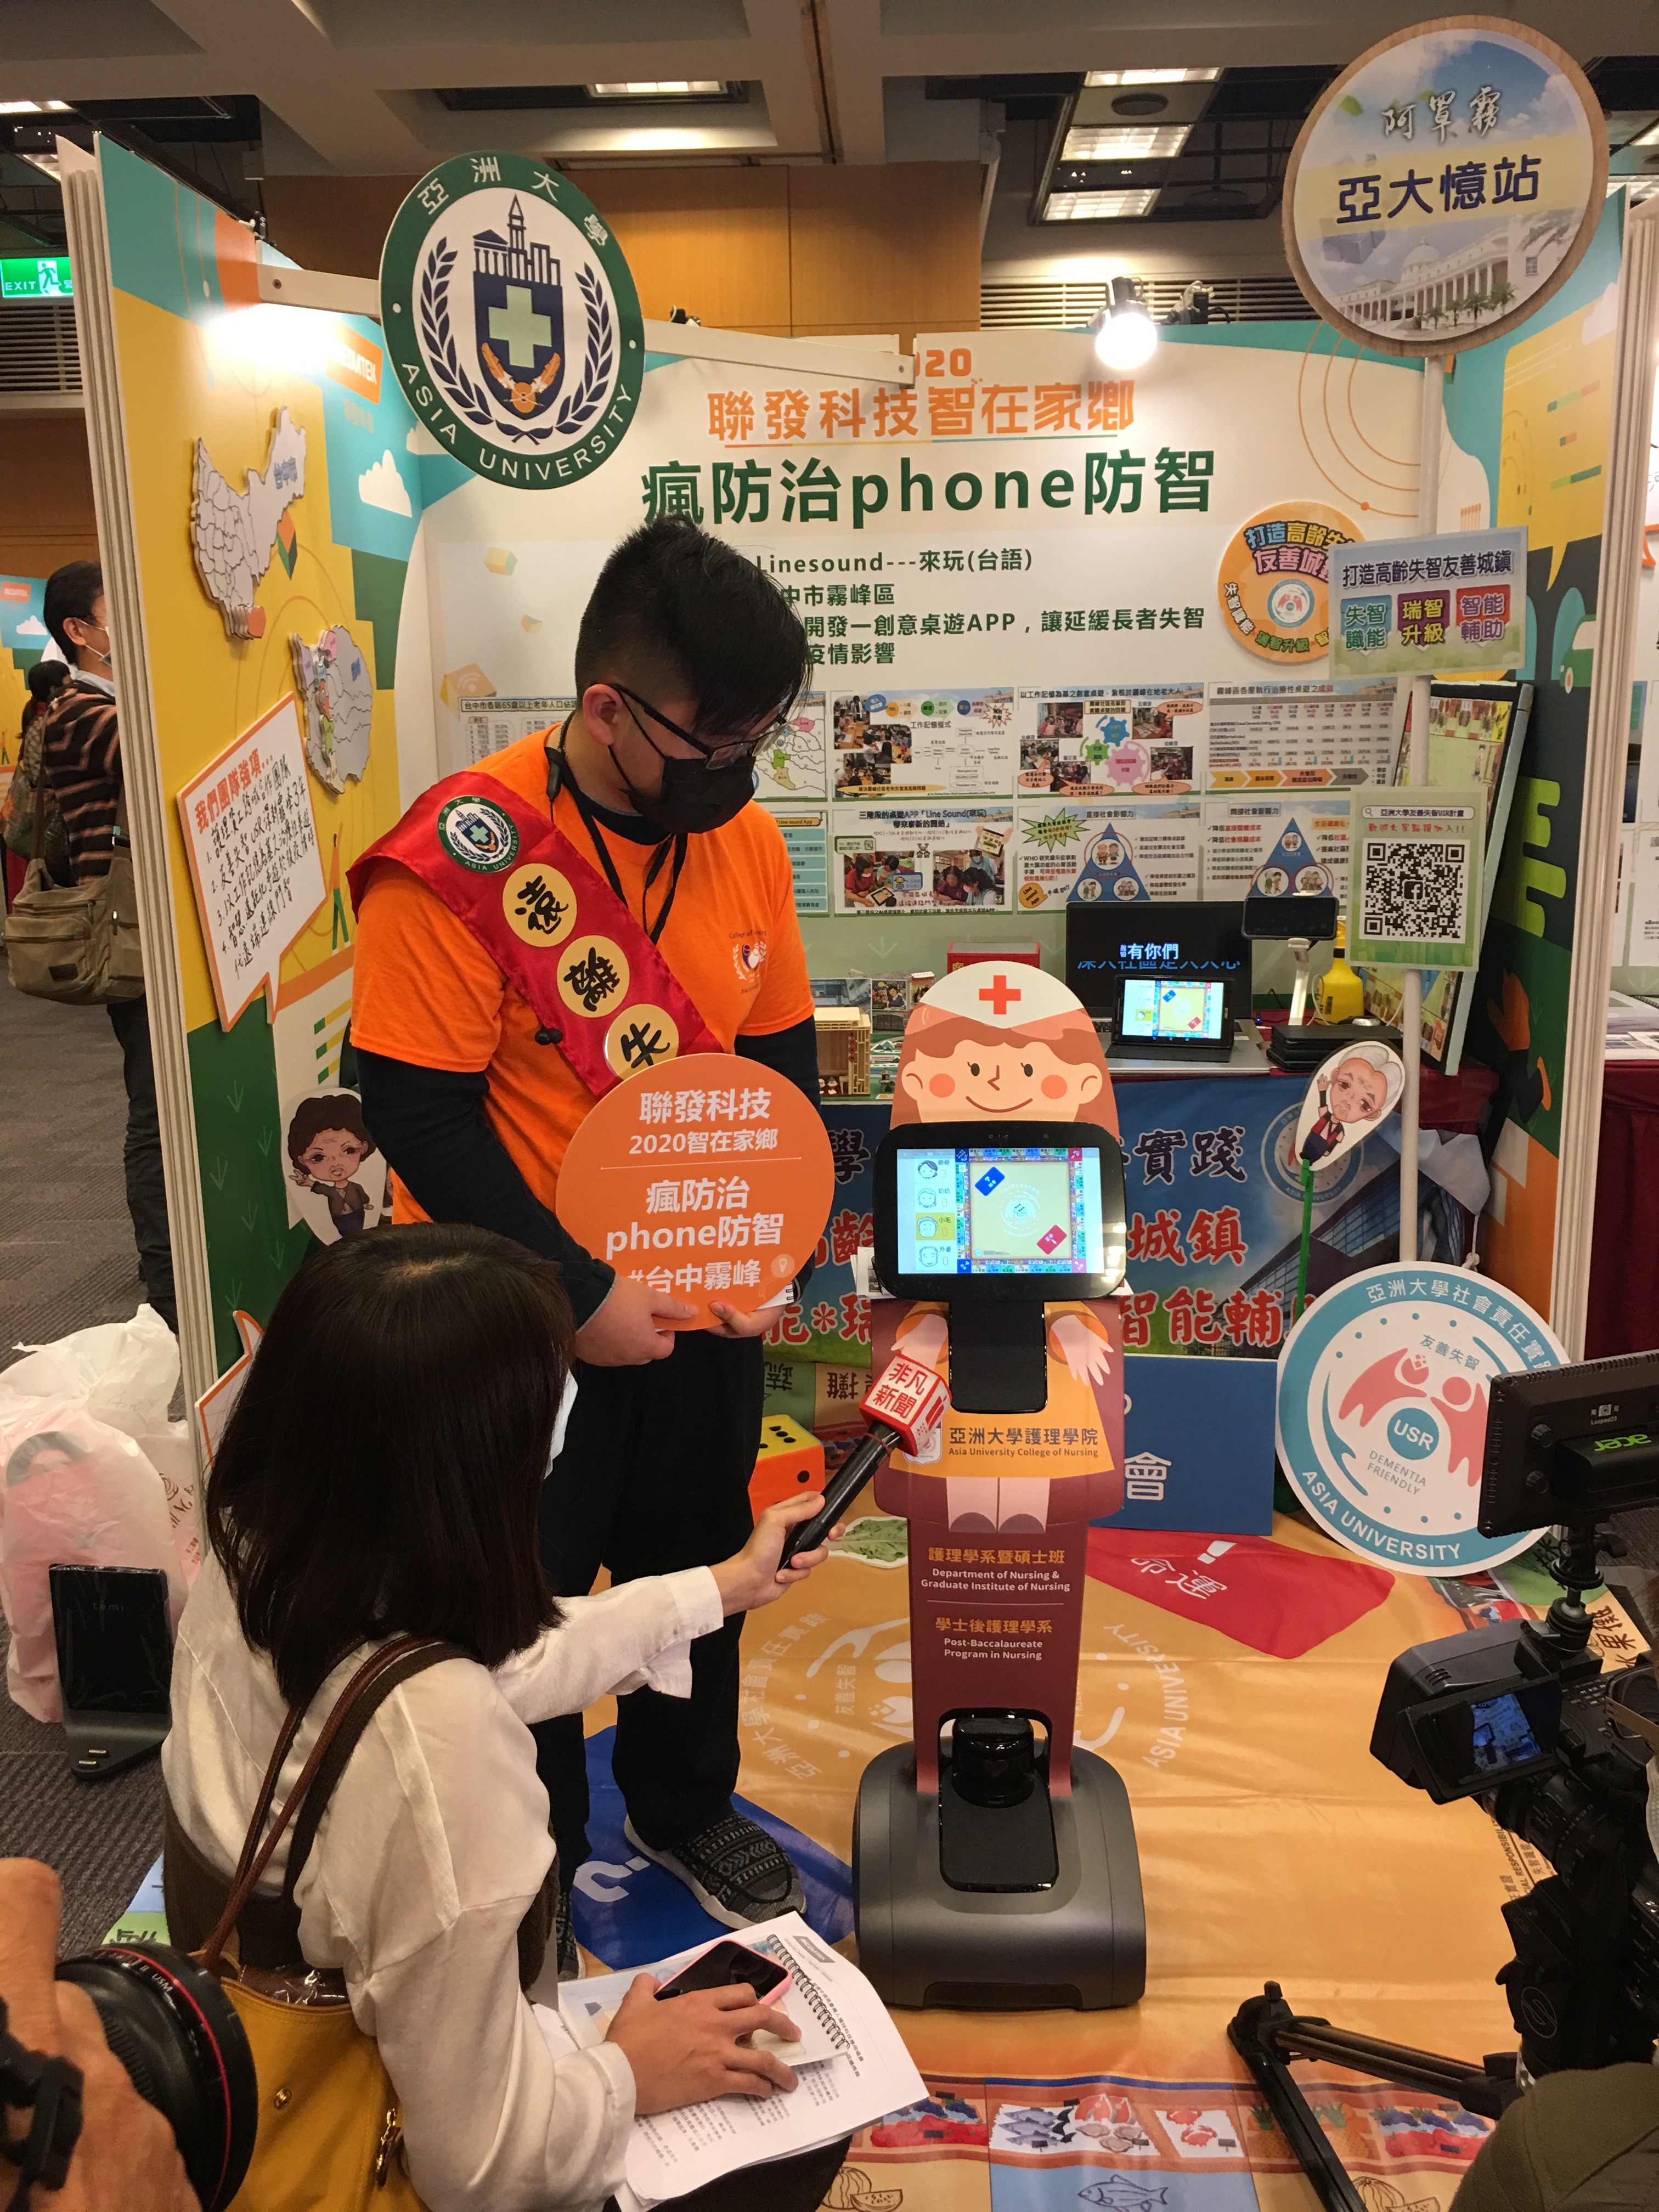 亞大護理學院TEMI機器人展示參賽作品「Line sound」App，吸引新聞媒體採訪。